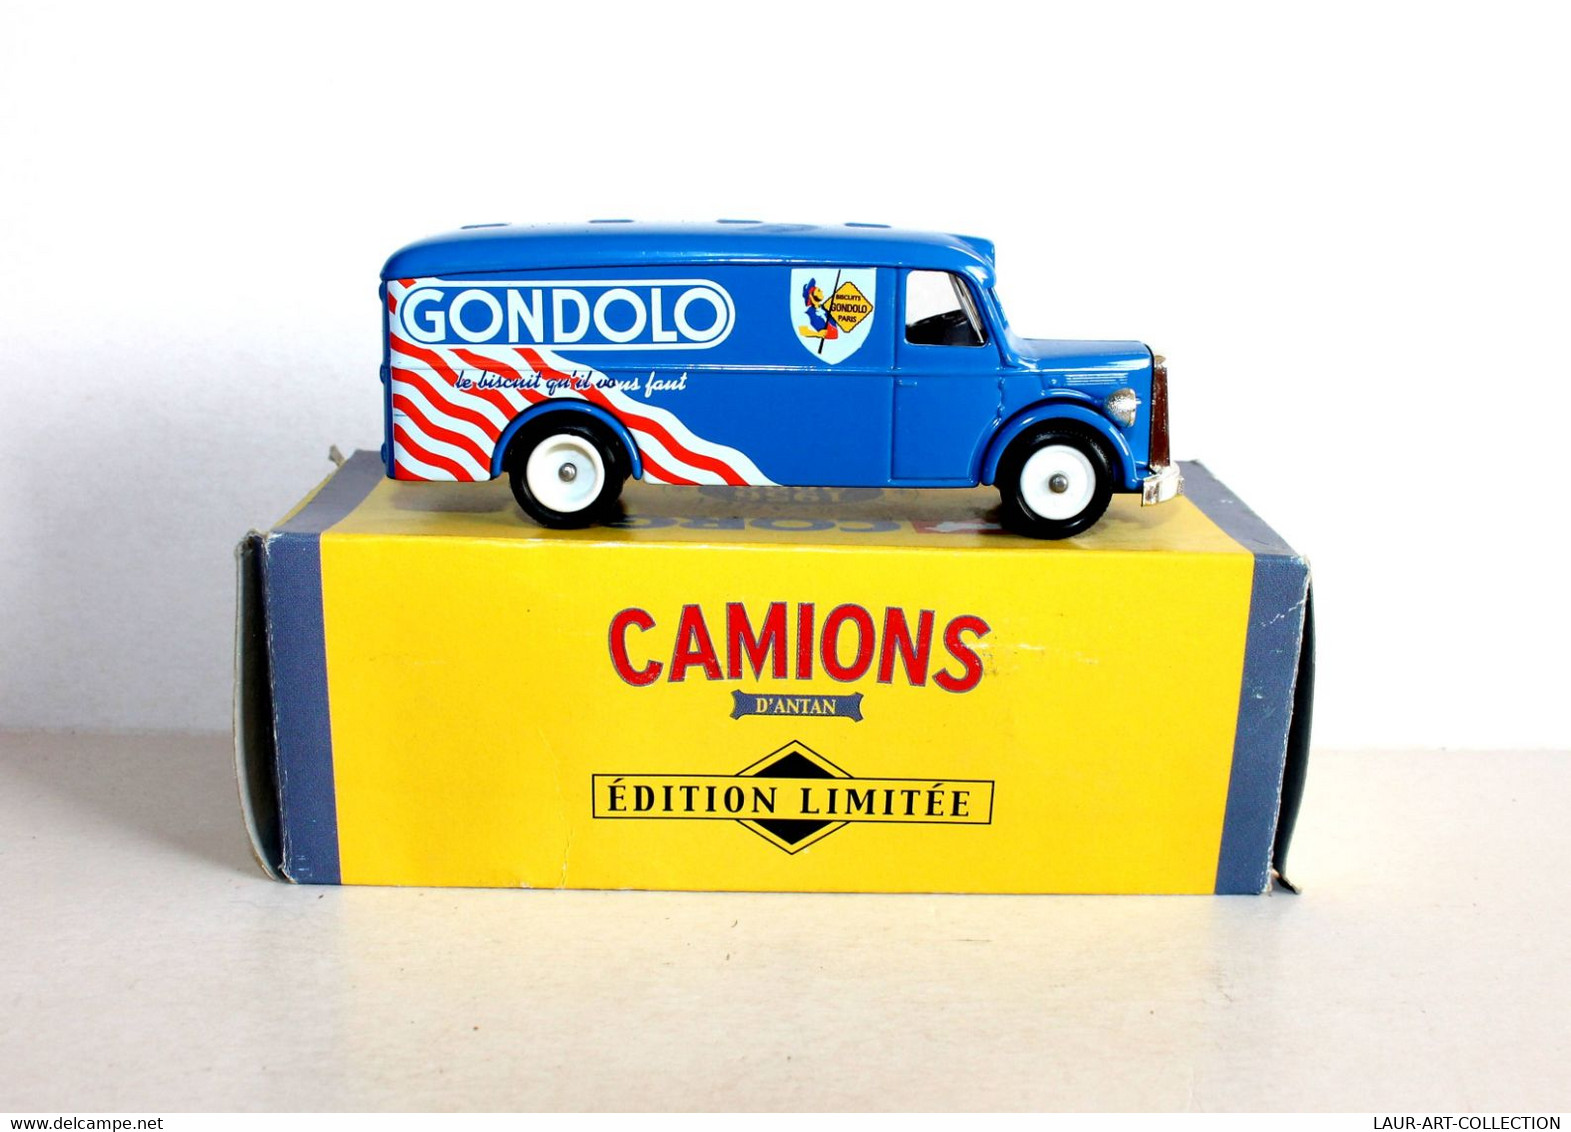 CORGI - CAMION DE LIVRAISON MAN VAN 1949, PUB GONDOLO, CAMIONS D'ANTAN 1956-2000 - AUTOMOBILE MINIATURE (2811.33) - Corgi Toys